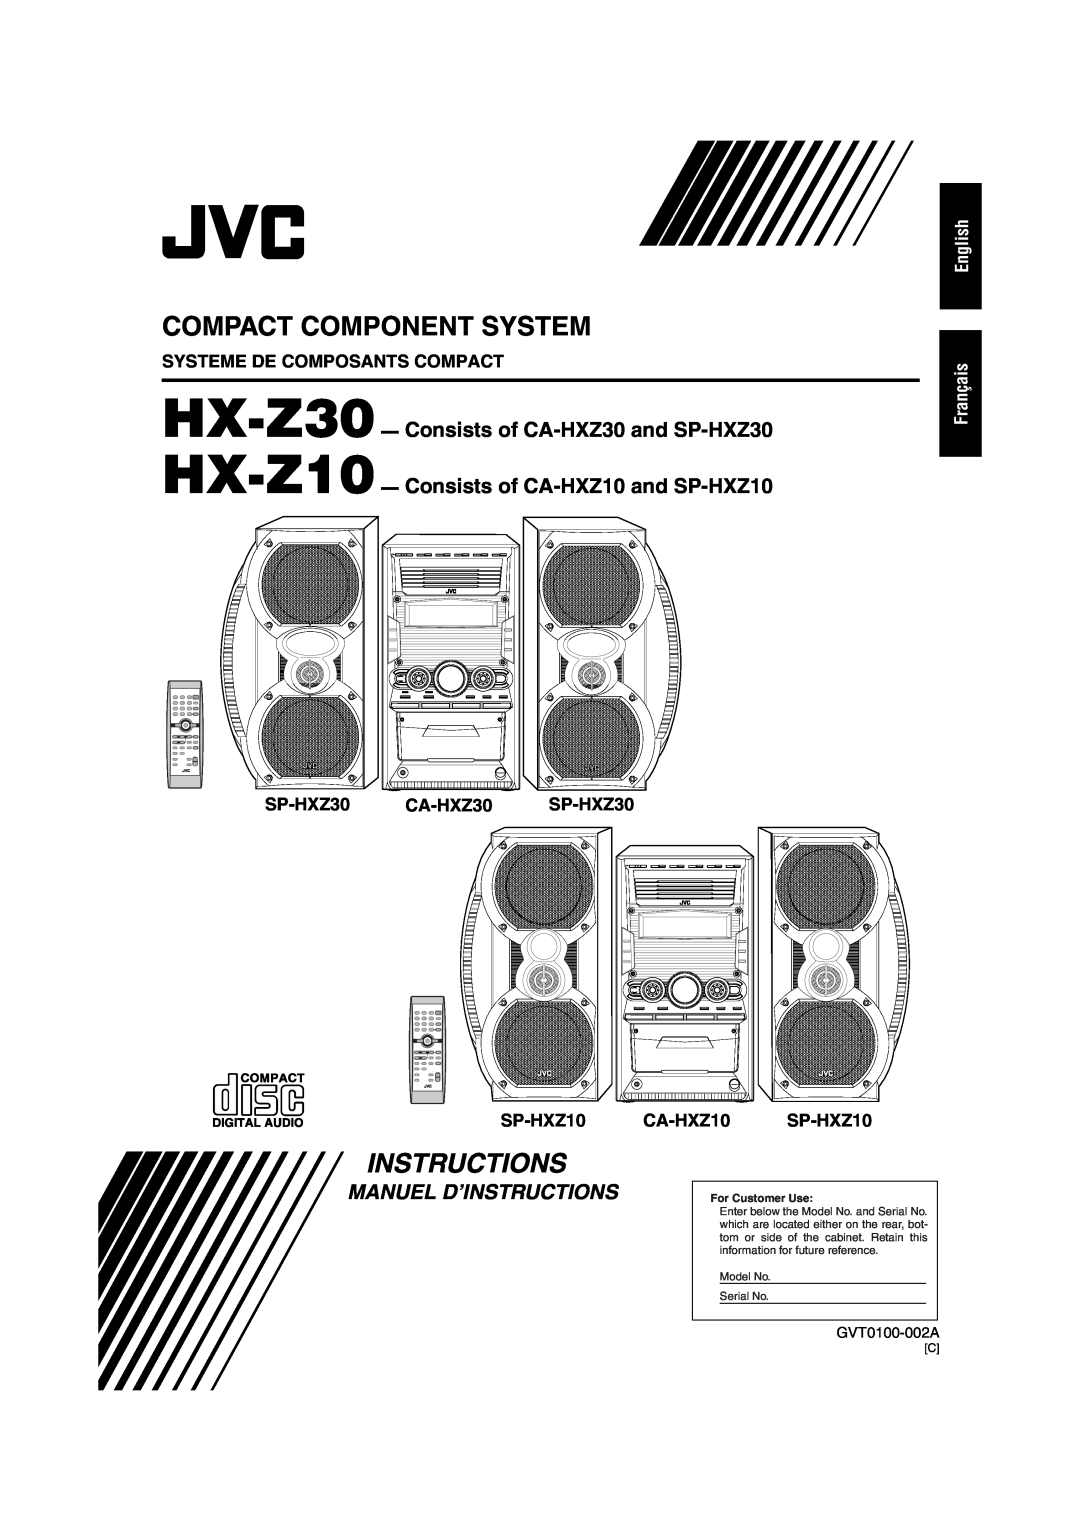 JVC HX-Z30 manual Systeme De Composants Compact, English Français, Compact Component System, Manuel D’Instructions 